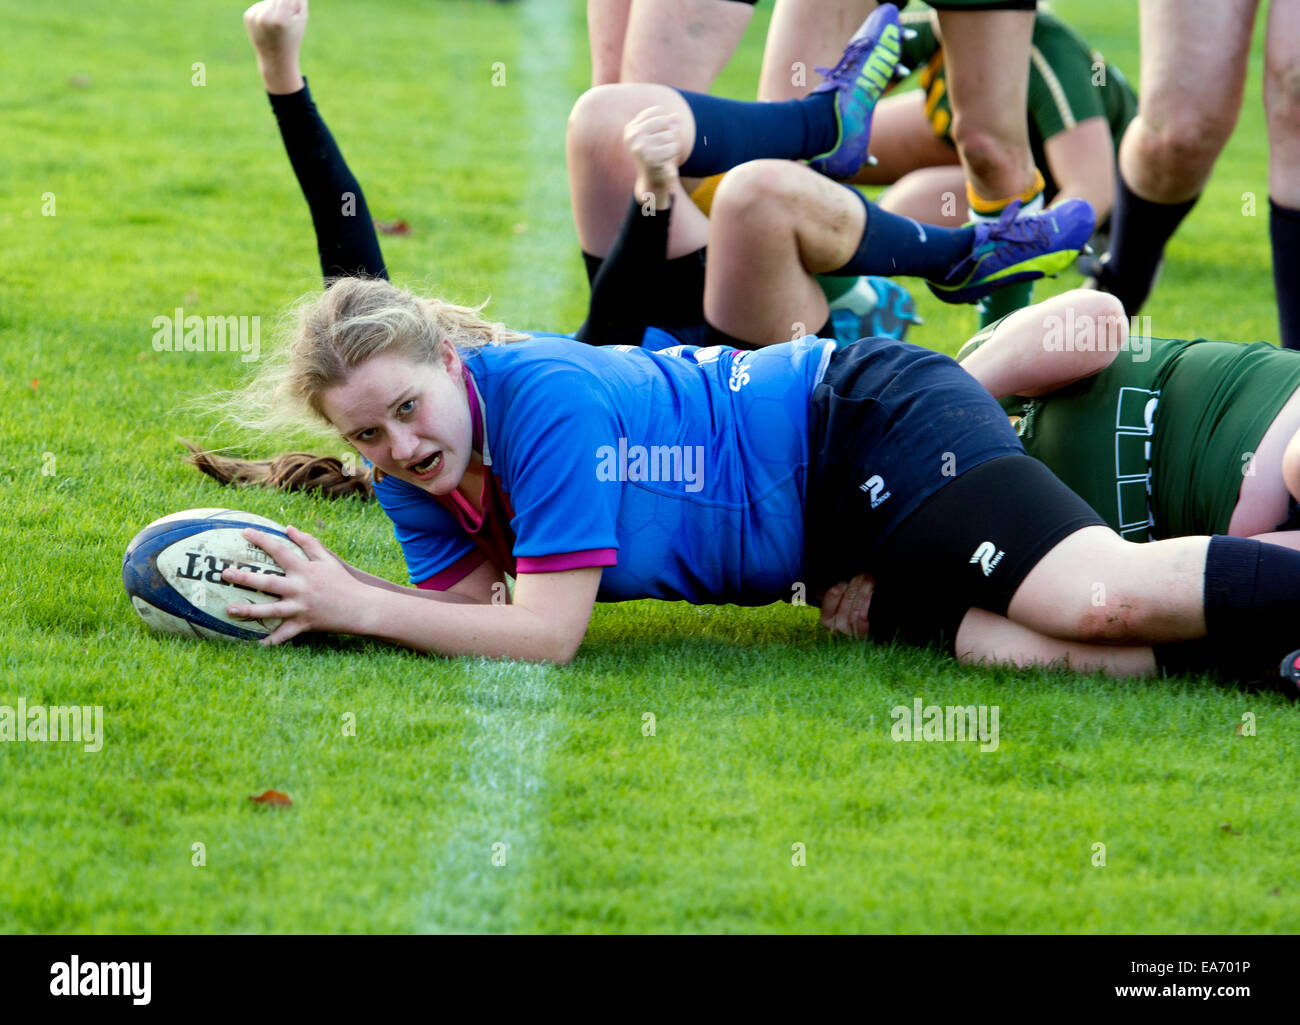 Le sport universitaire, Women's Rugby Union, au Royaume-Uni. Un joueur qui compte essayer. Banque D'Images